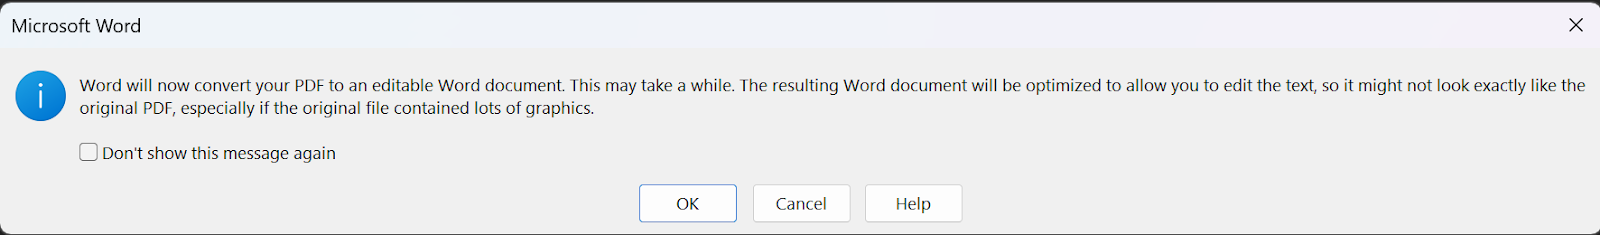 التعديل على PDF باستخدام Microsoft Word